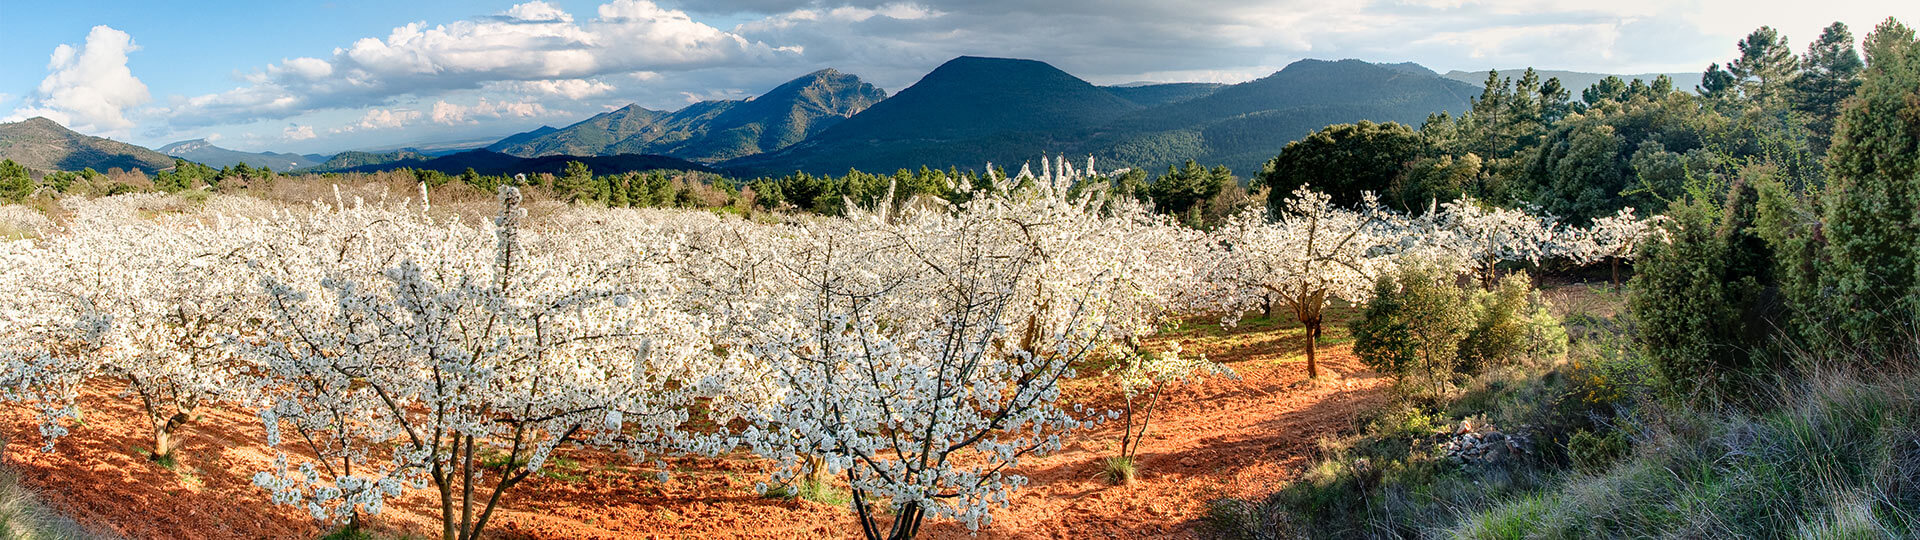  Cerezos en flor en el valle del Jerte, Extremadura